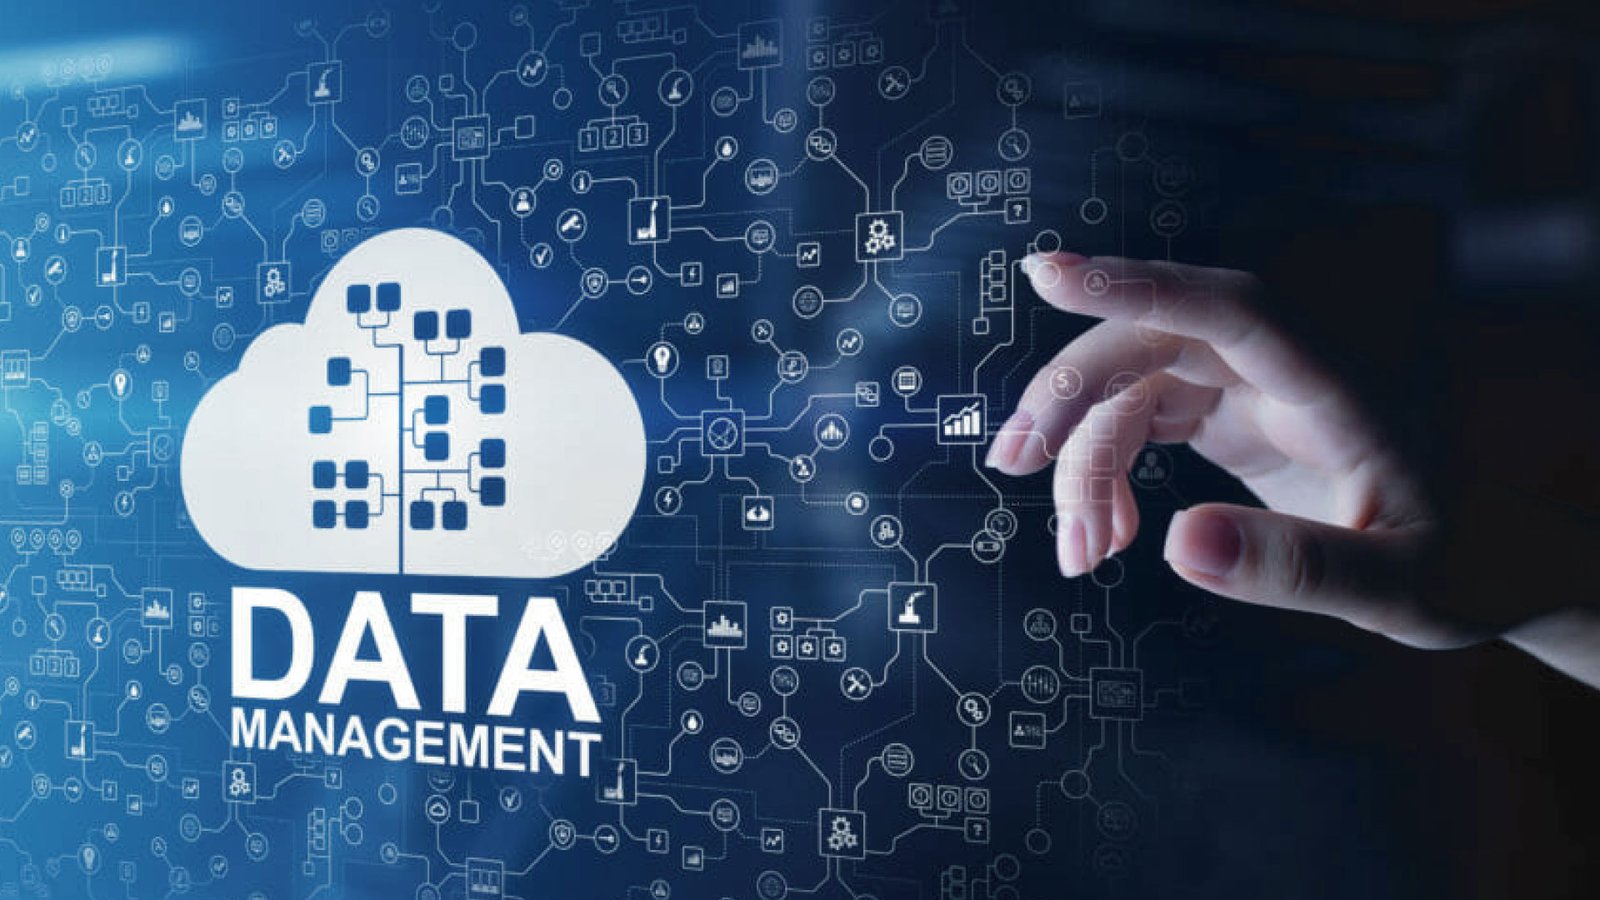 Data leads. Управление данными. Data Management. Data Management is. Tdata рисунок.